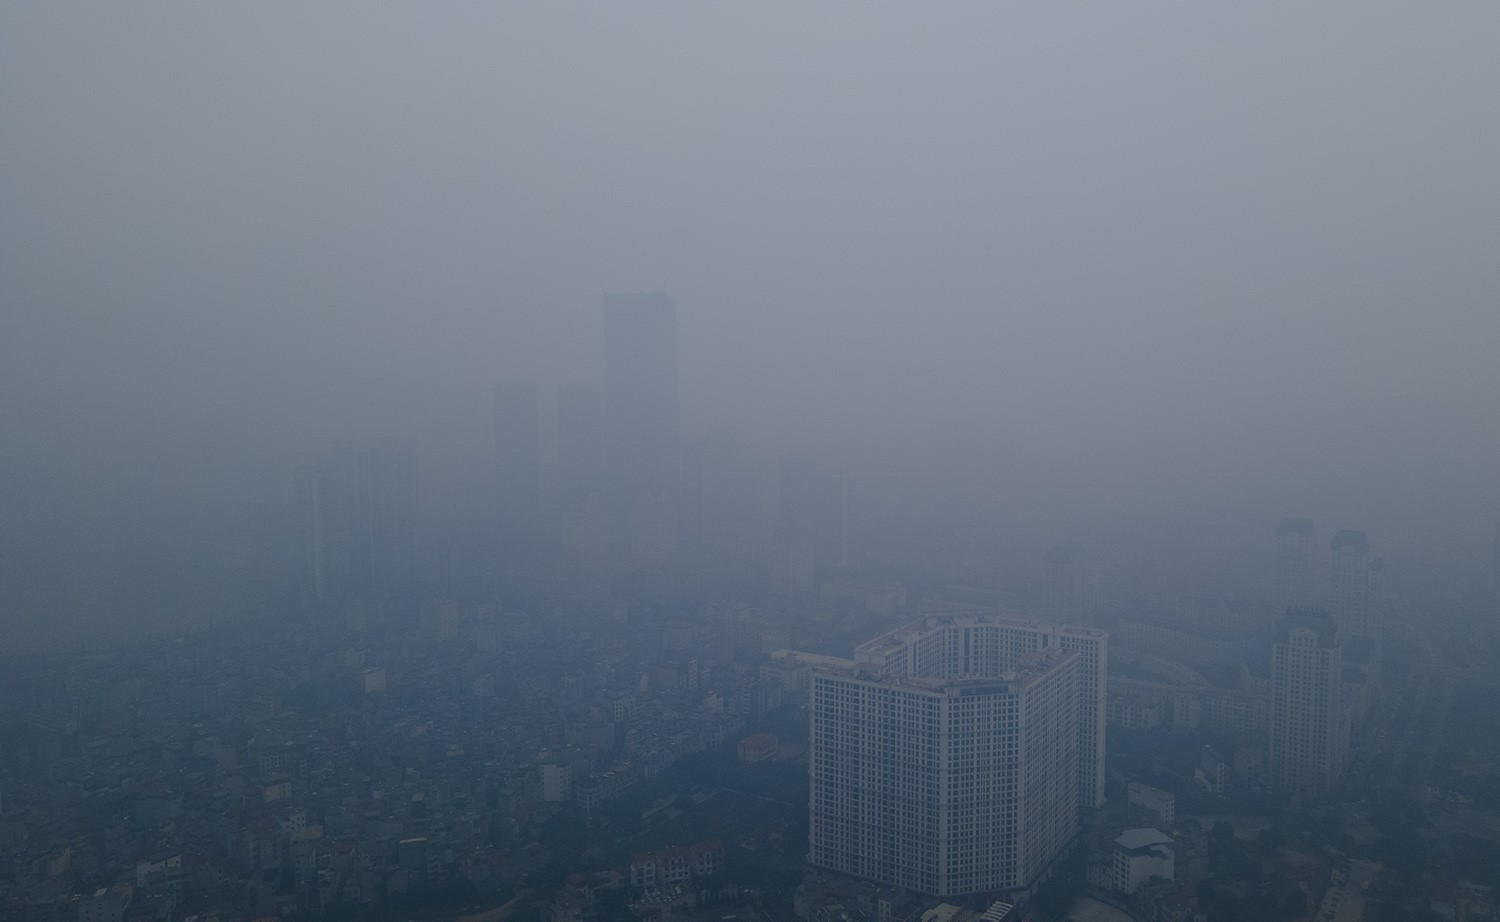 Trung tâm Hà Nội chìm trong sương mù dày đặc, chất lượng không khí nhiều nơi ở “mức đỏ” - 5